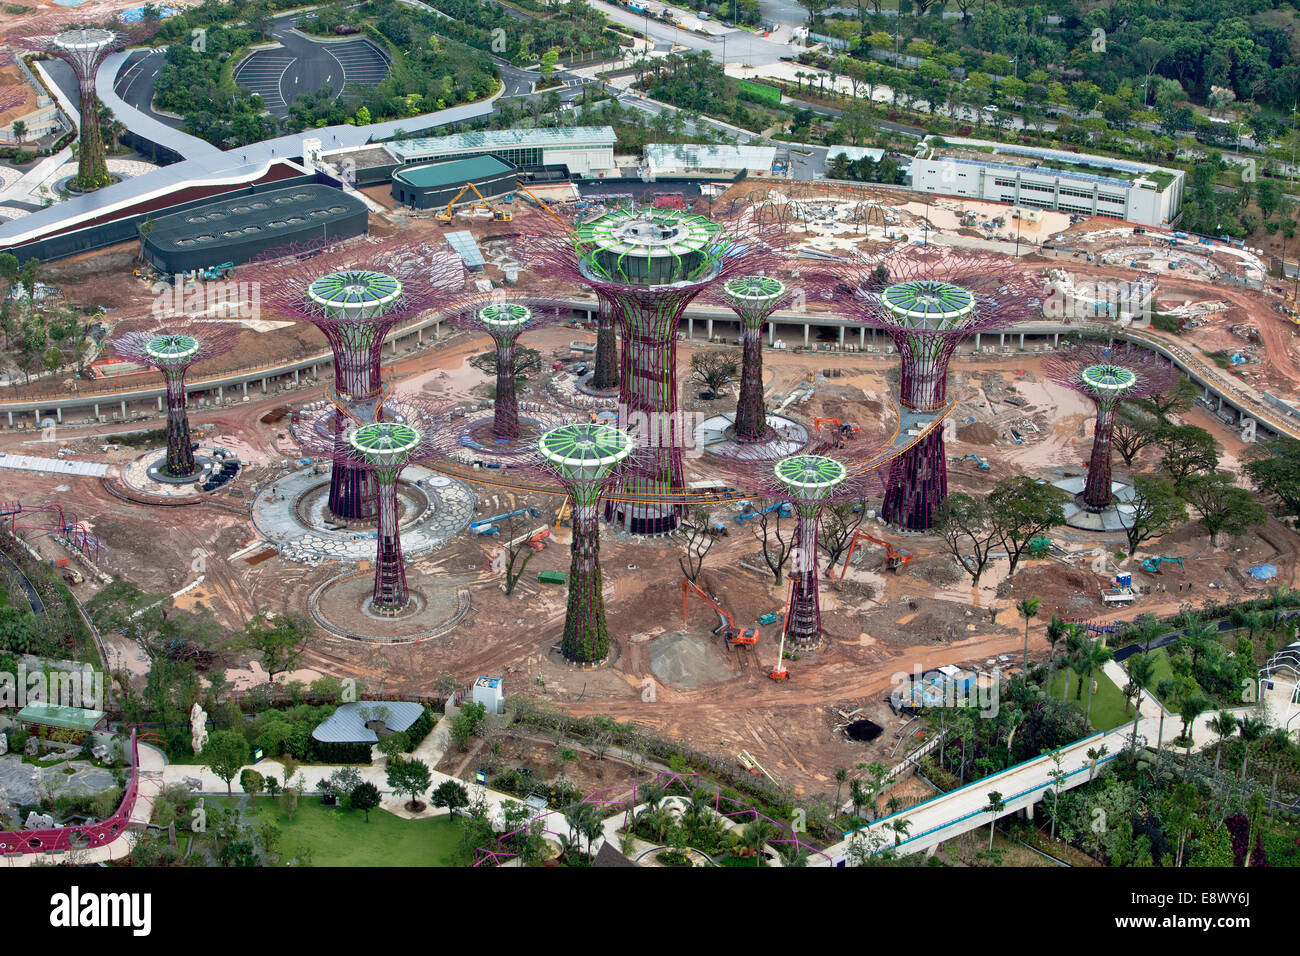 Gigantische synthetische baumähnliche Strukturen Linie künstlichen Hafen Singapurs und dienen als vertikale Gärten der exotischen Pflanzenwelt. Durch erhöhten Laufstegen verbunden, sind 25 bis 40 Meter hohe Supertrees mit Umwelttechnologien ausgestattet, die die Ecol nachahmen Stockfoto